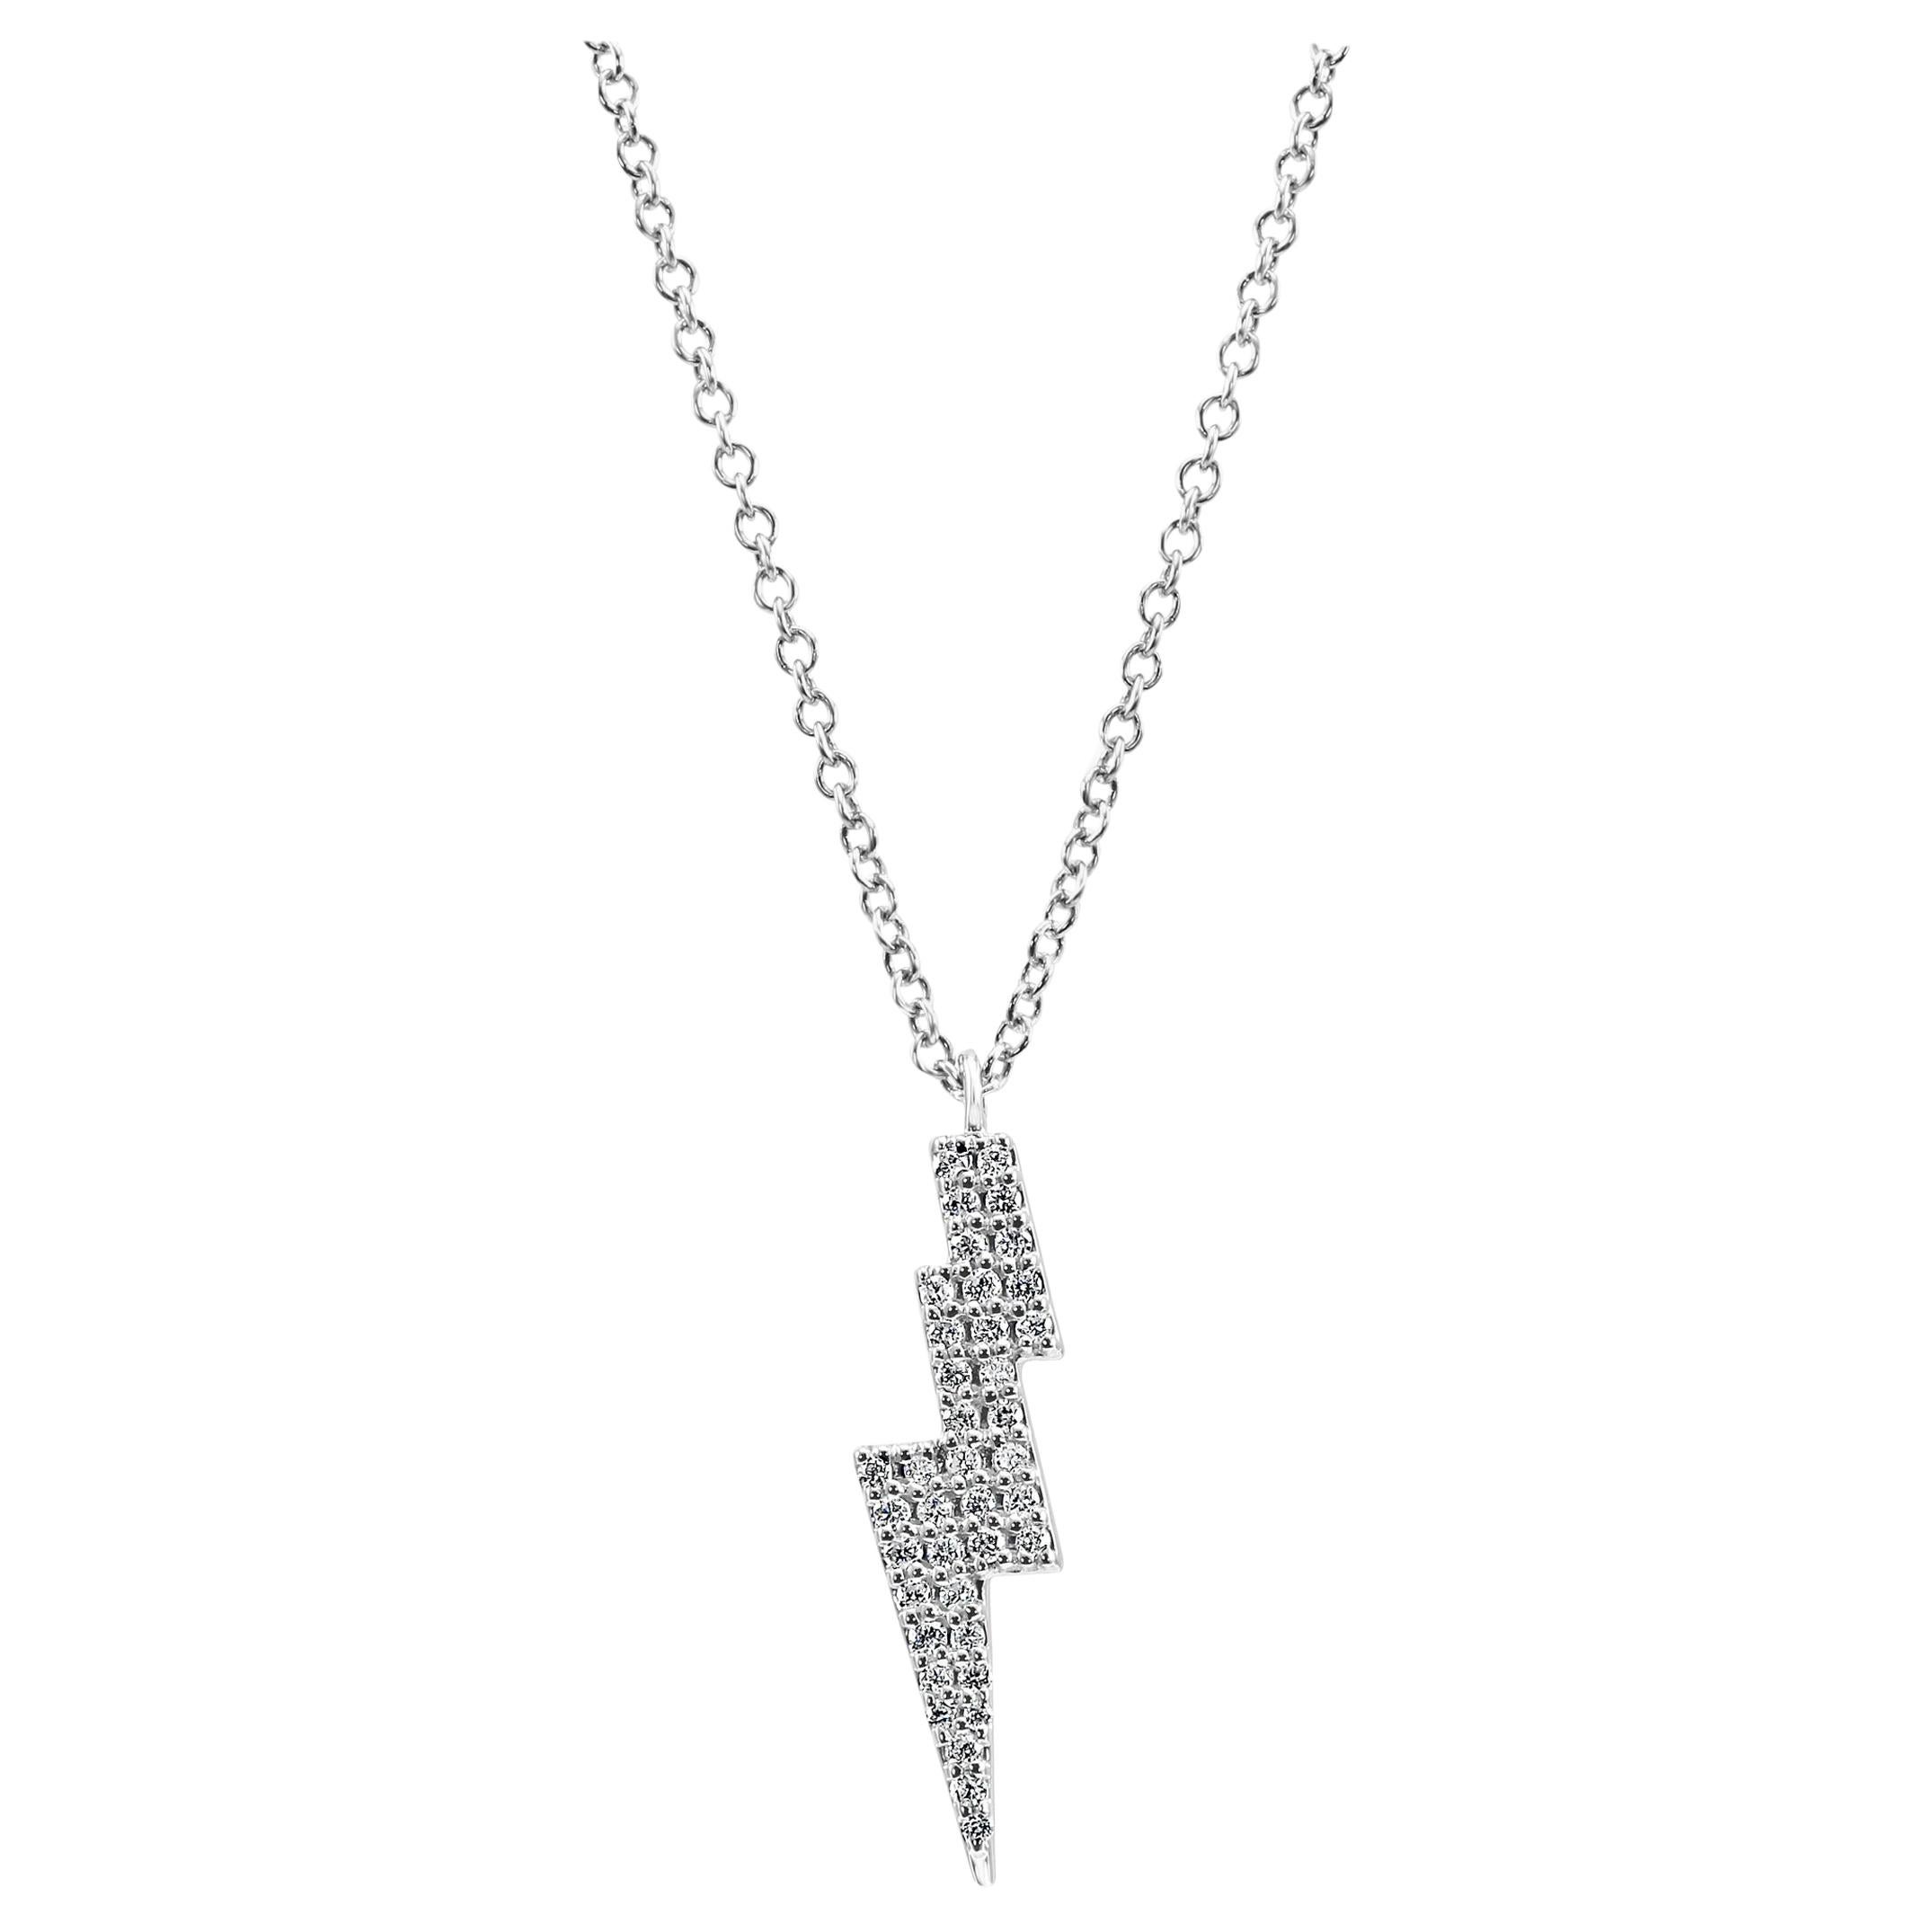 Round White Diamonds Fashion Drop Pendant 14 Karat White Gold Chain Necklace